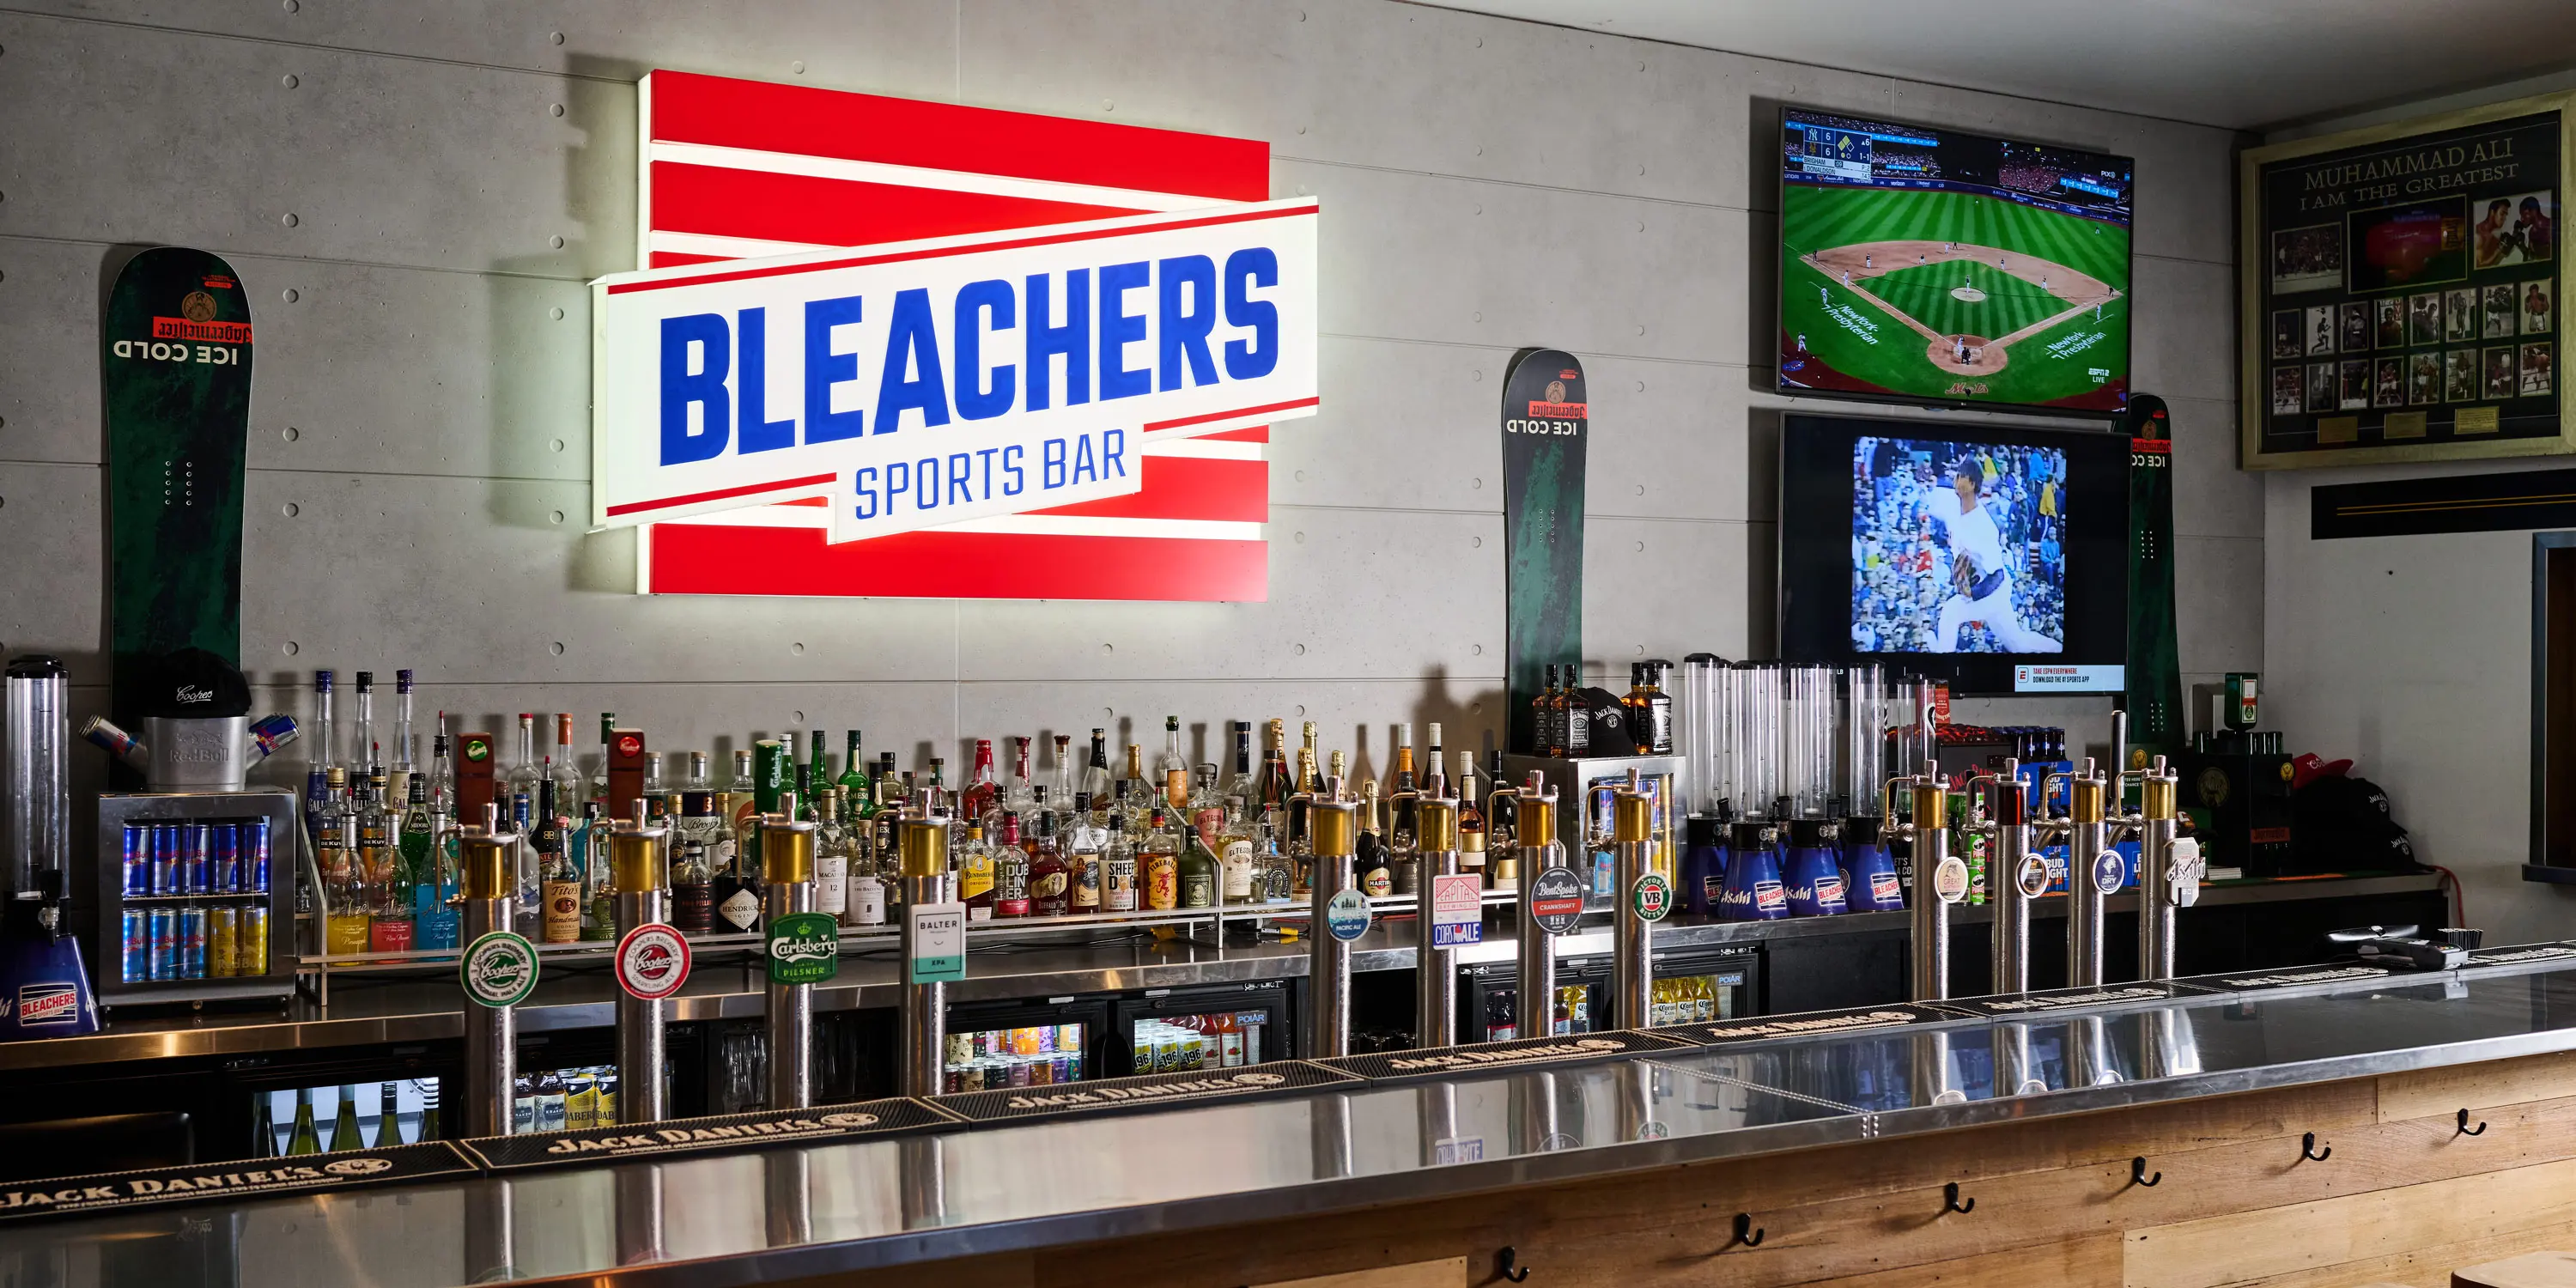 Bleachers sports bar